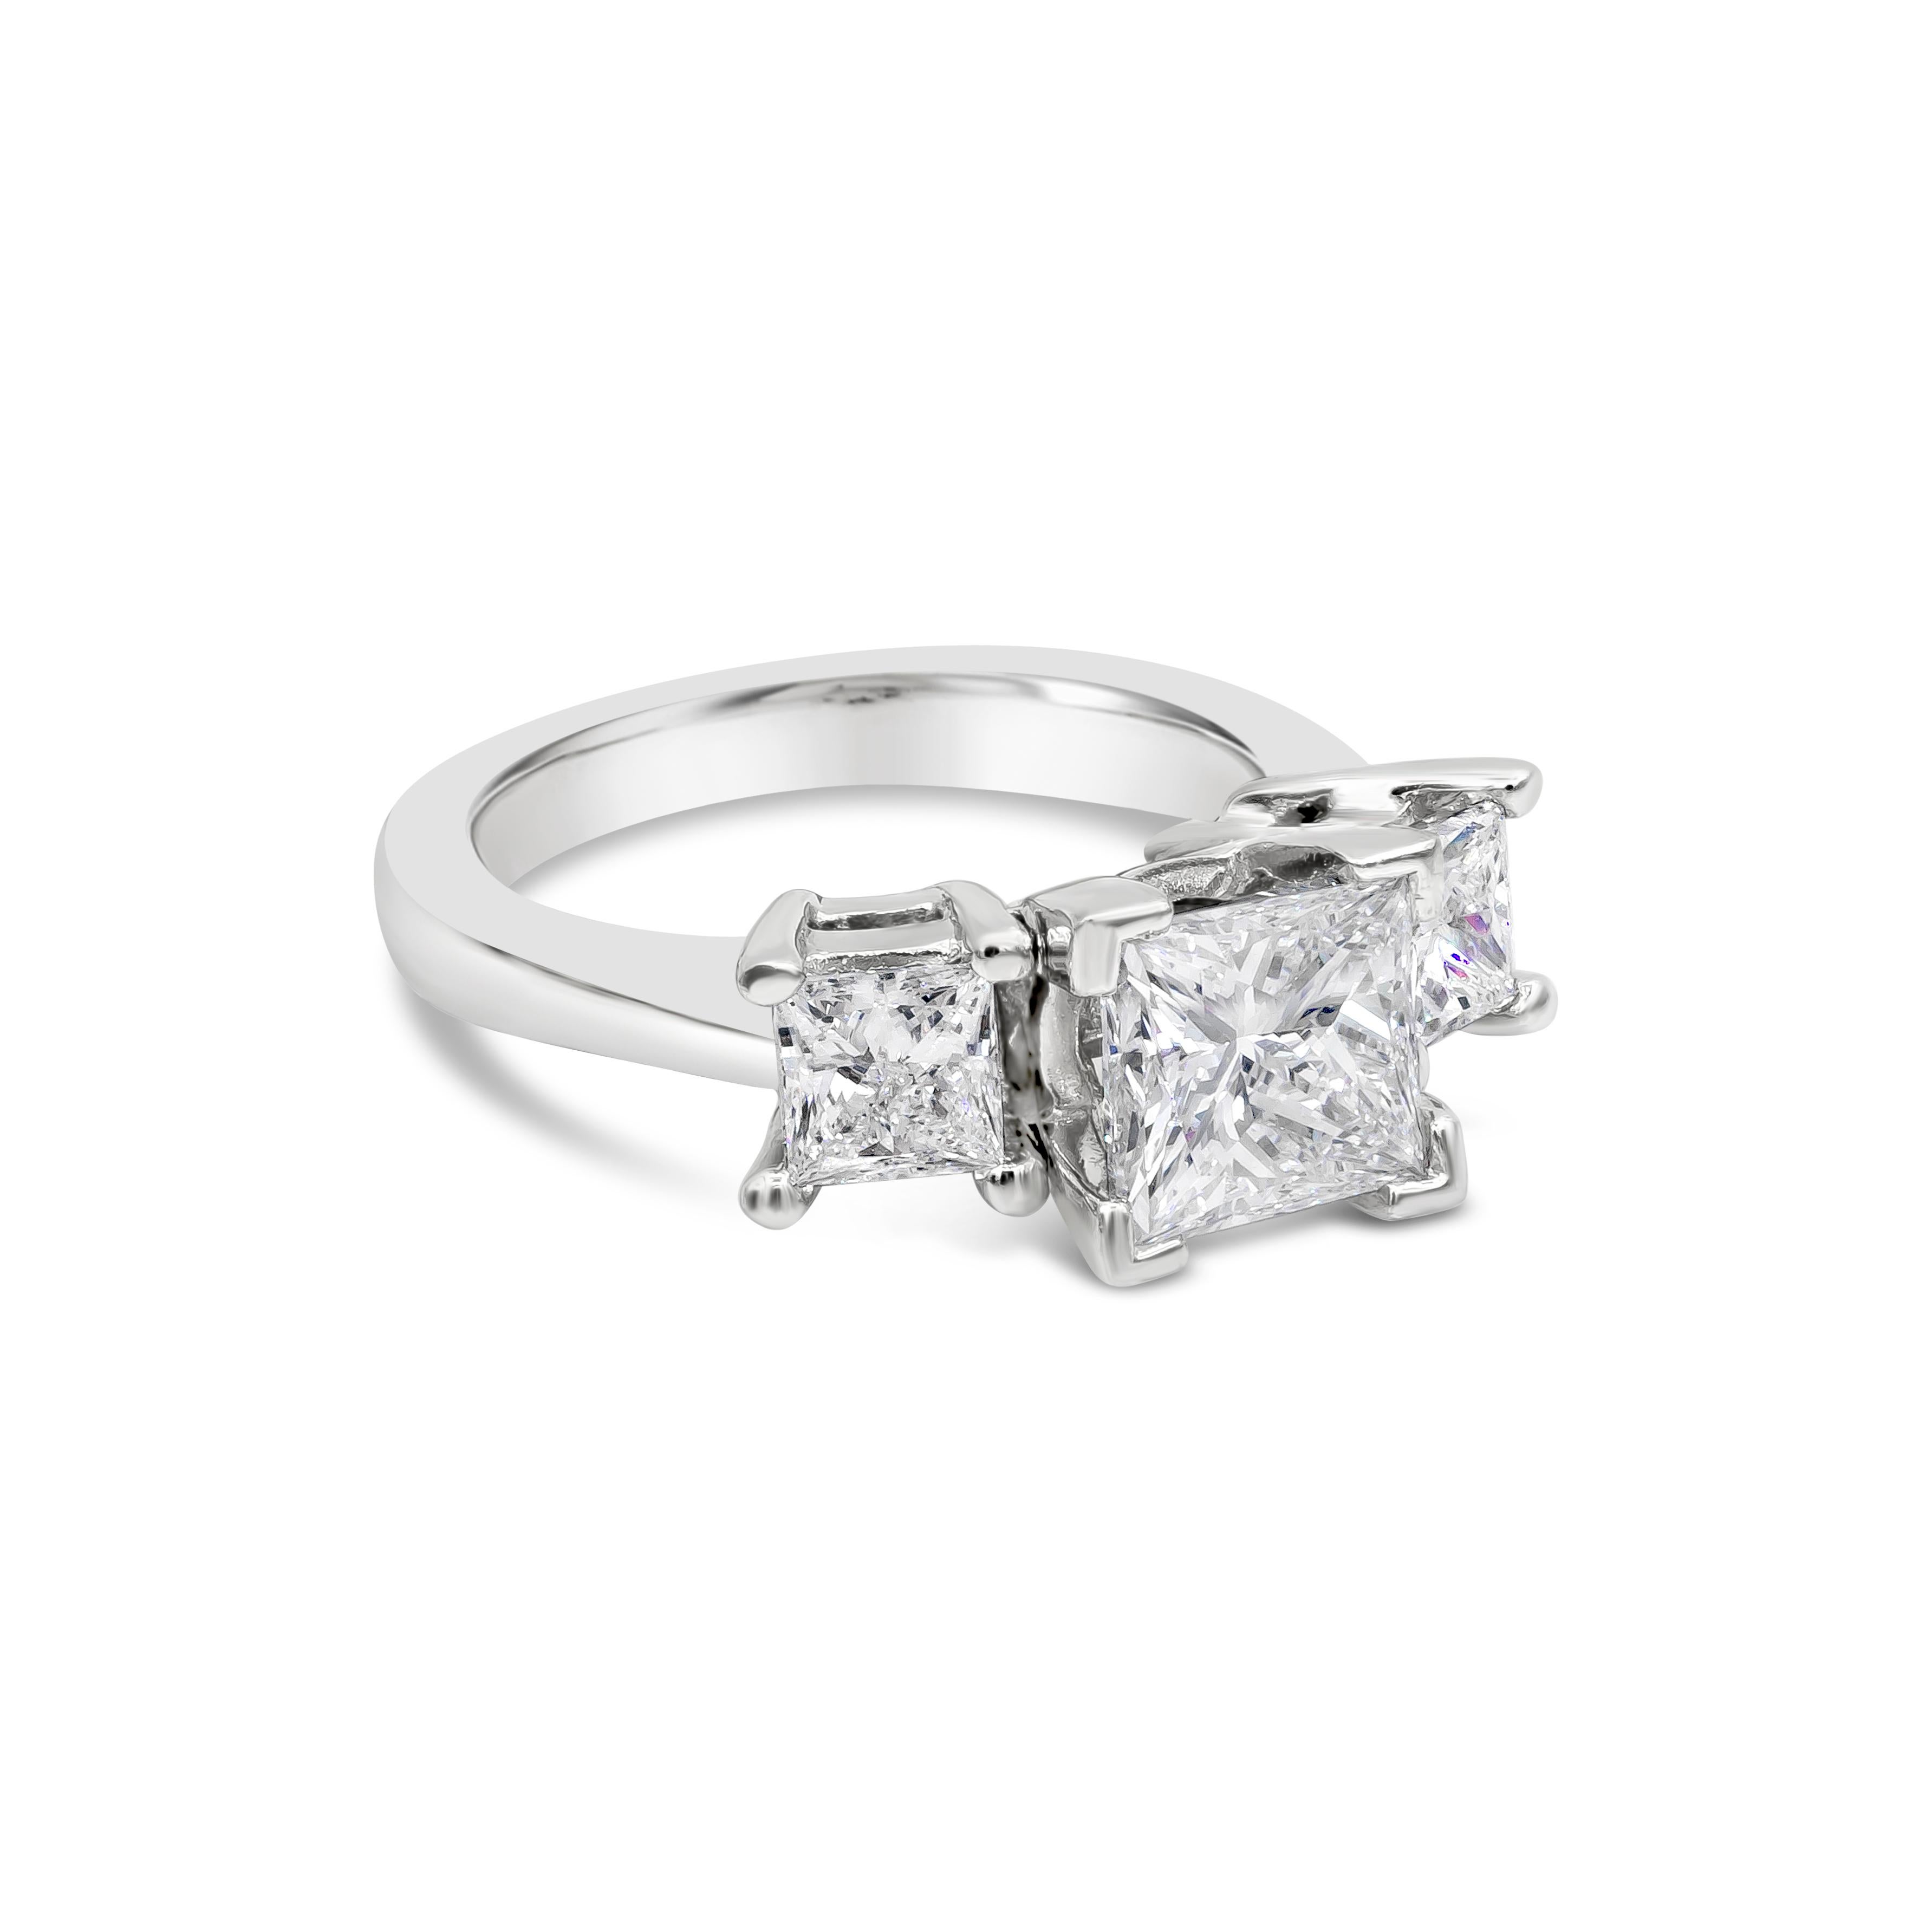 Ein zeitloser und beliebter Verlobungsring mit einem Diamanten im Prinzessinnenschliff von 1,70 Karat, flankiert von zwei kleineren Diamanten im Prinzessinnenschliff von insgesamt 0,80 Karat. GIA zertifizierte den mittleren Diamanten mit der Farbe F